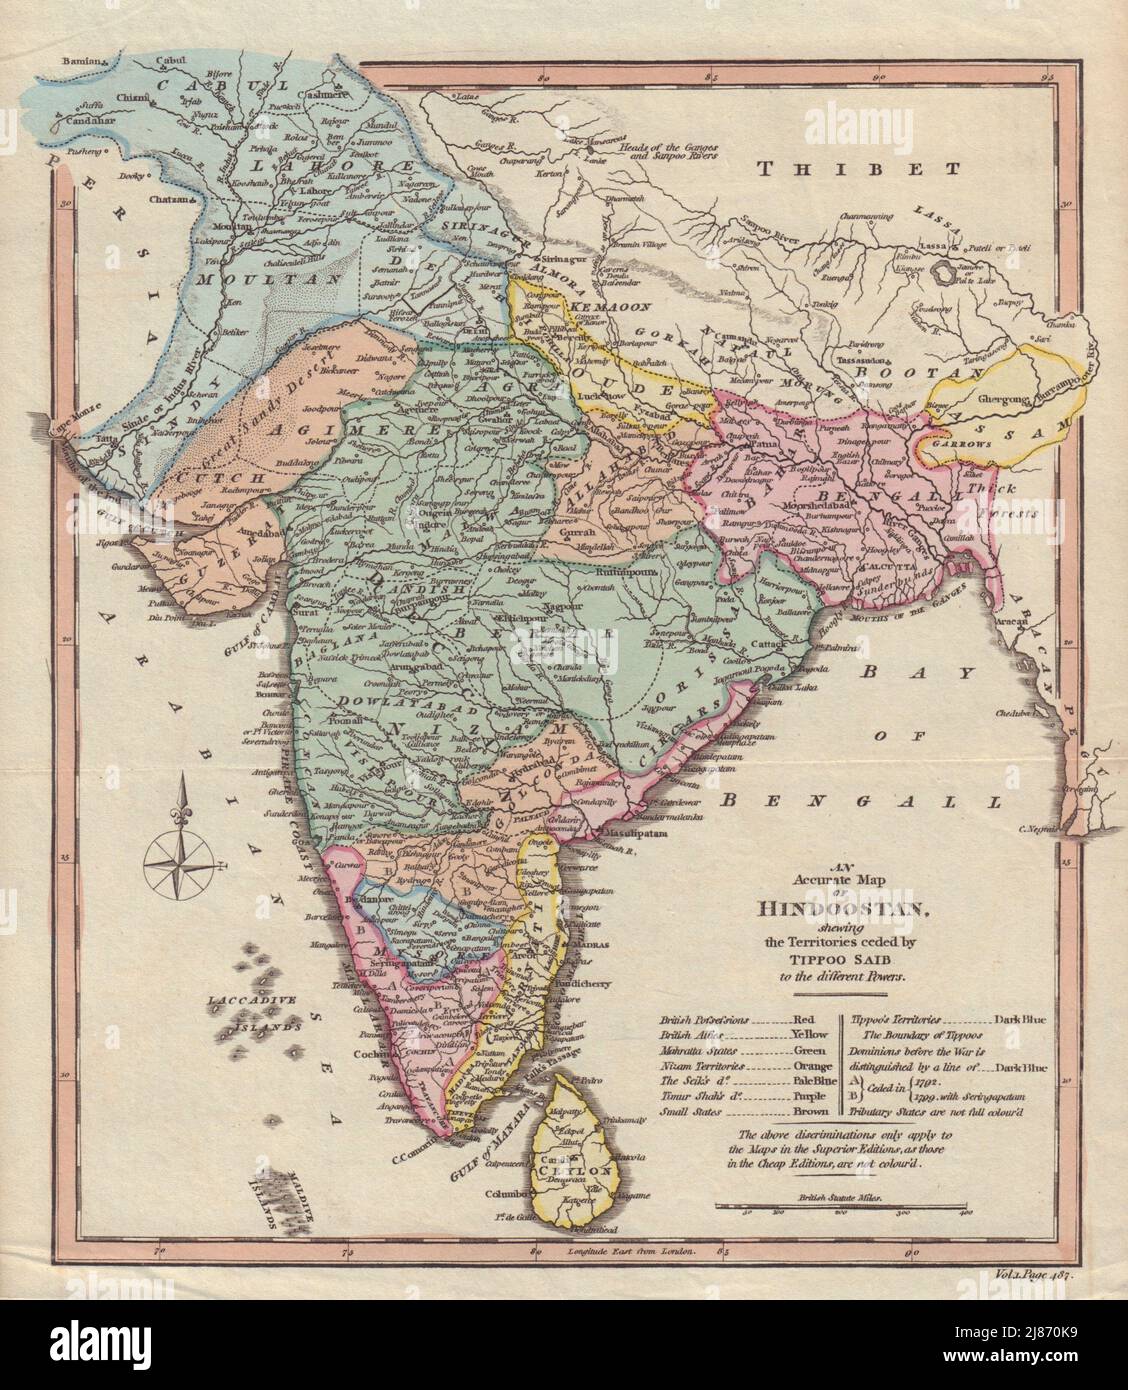 Hindoostan esquivando los territorios cedidos por Tipoo Saib. India. Mapa DE COOKE 1817 Foto de stock